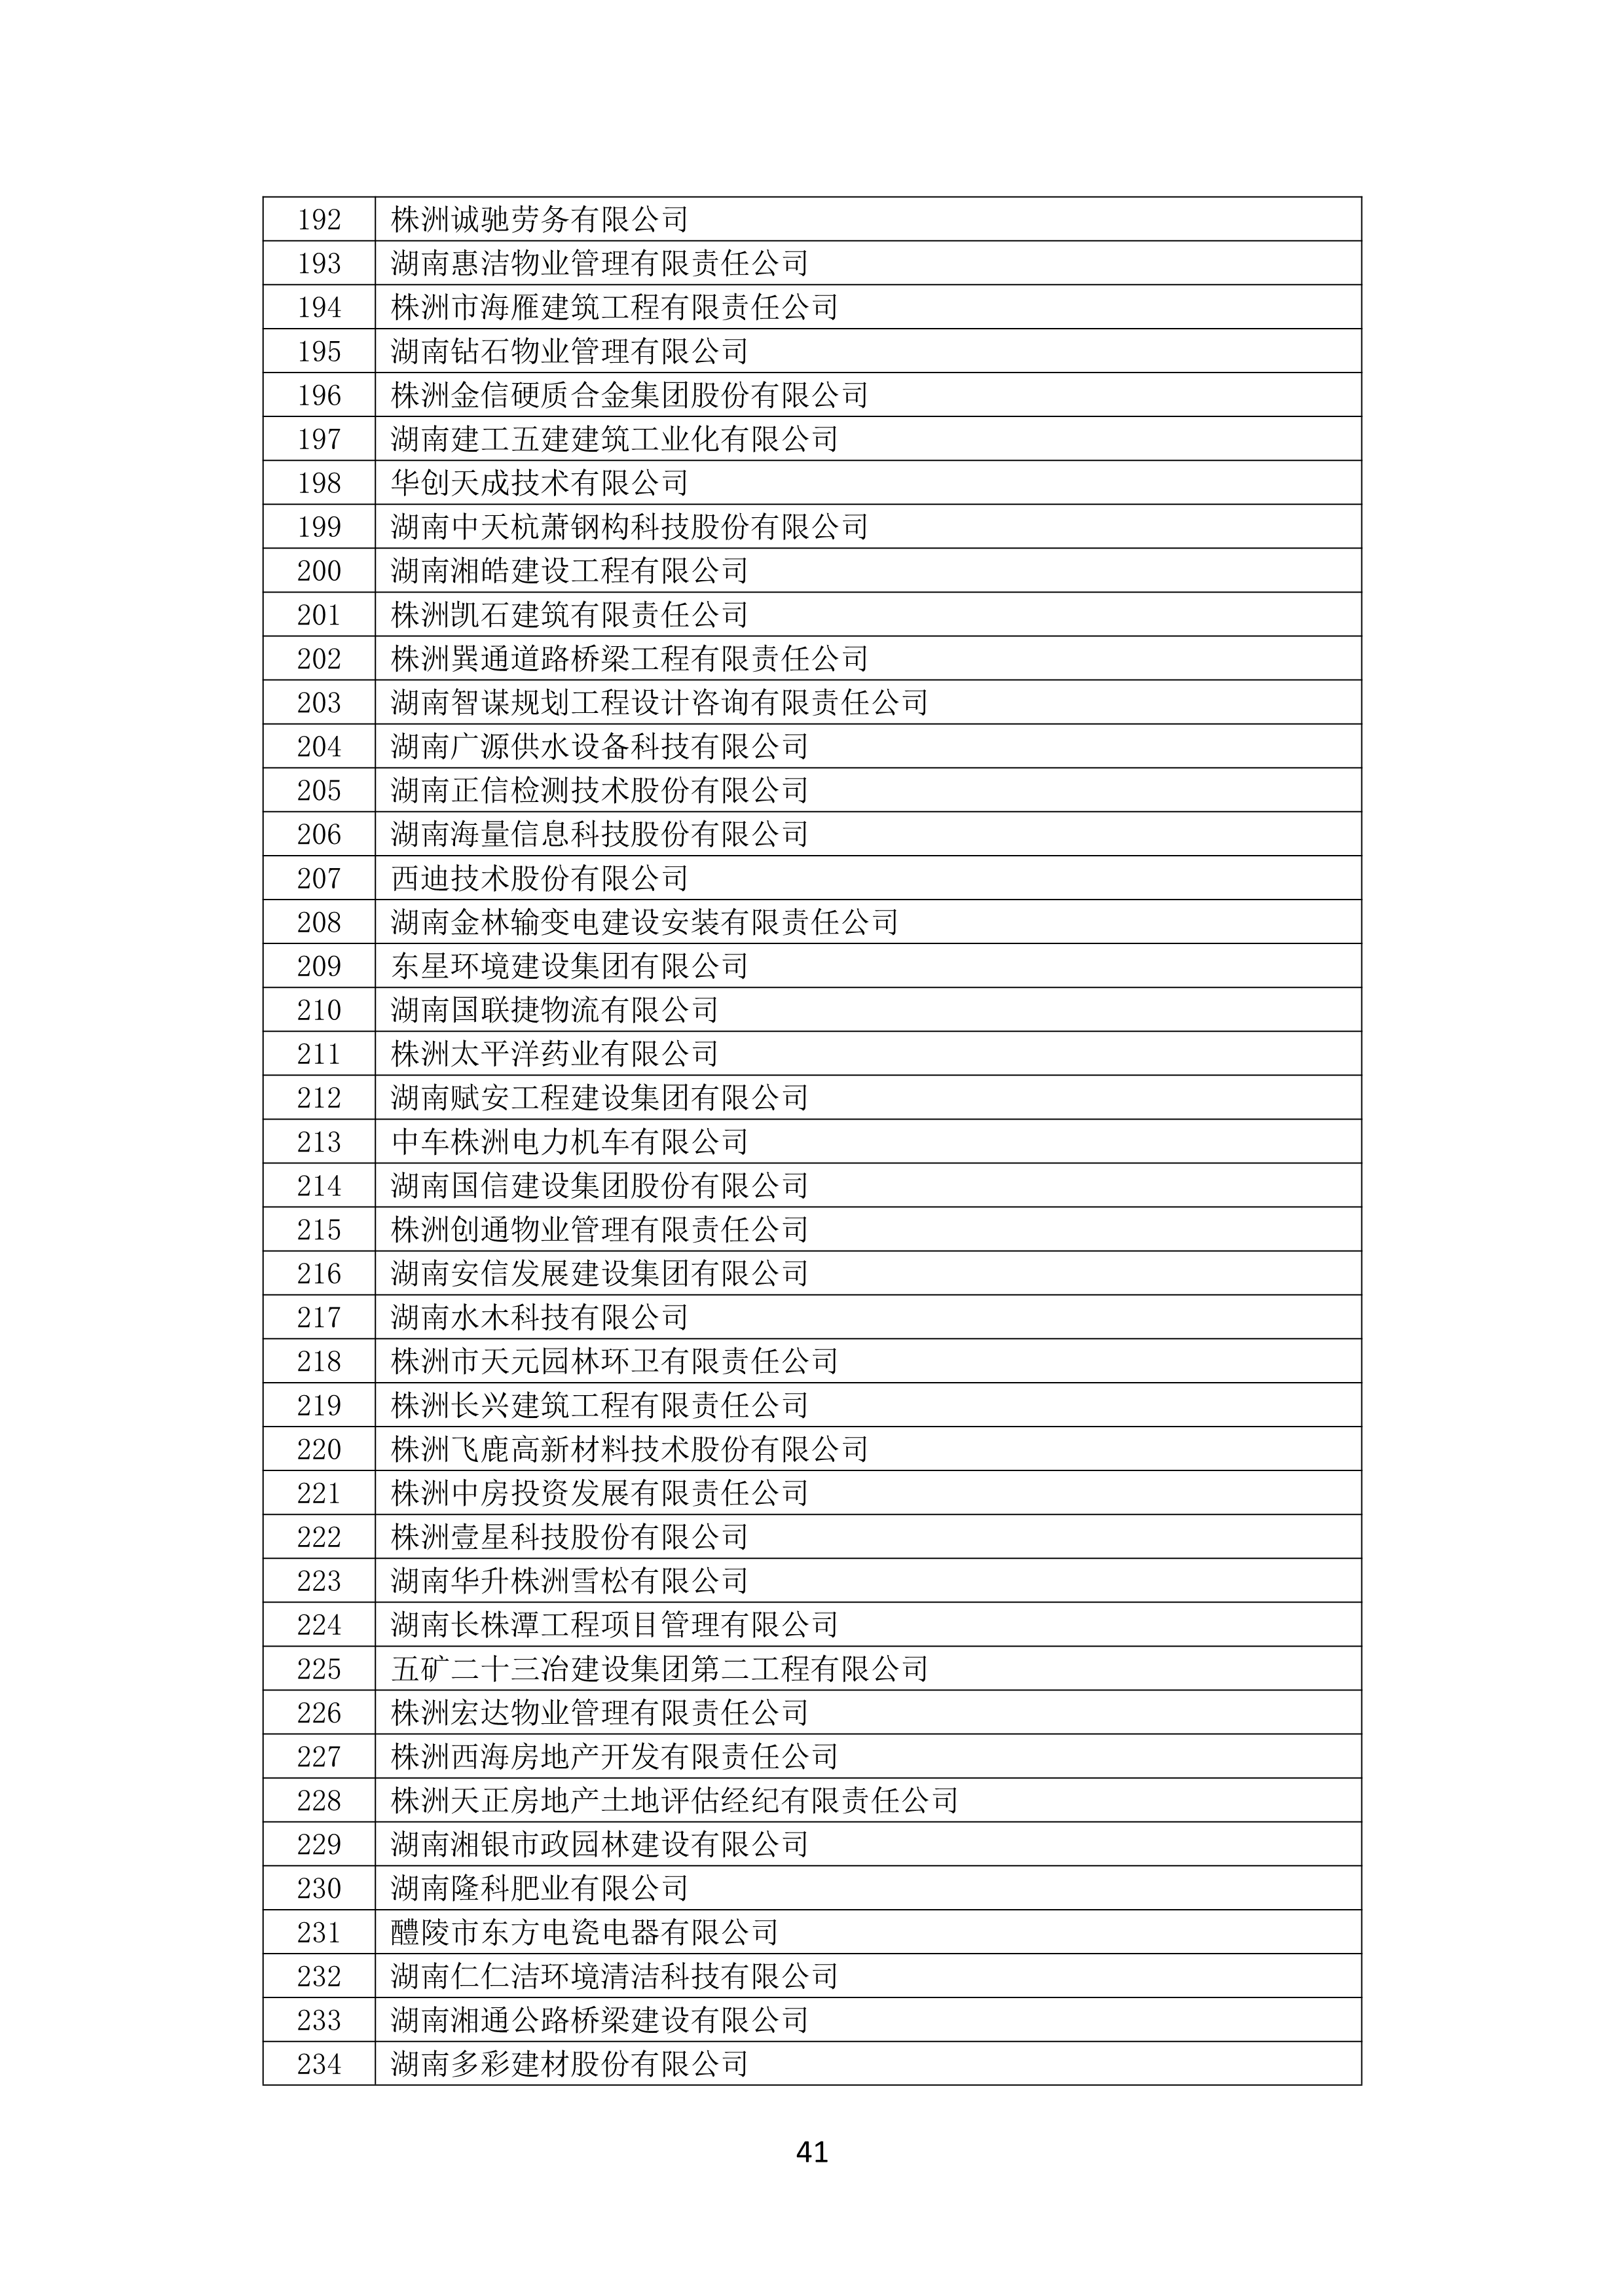 2021 年(nián)度湖南省守合同重信用企業名單_42.png